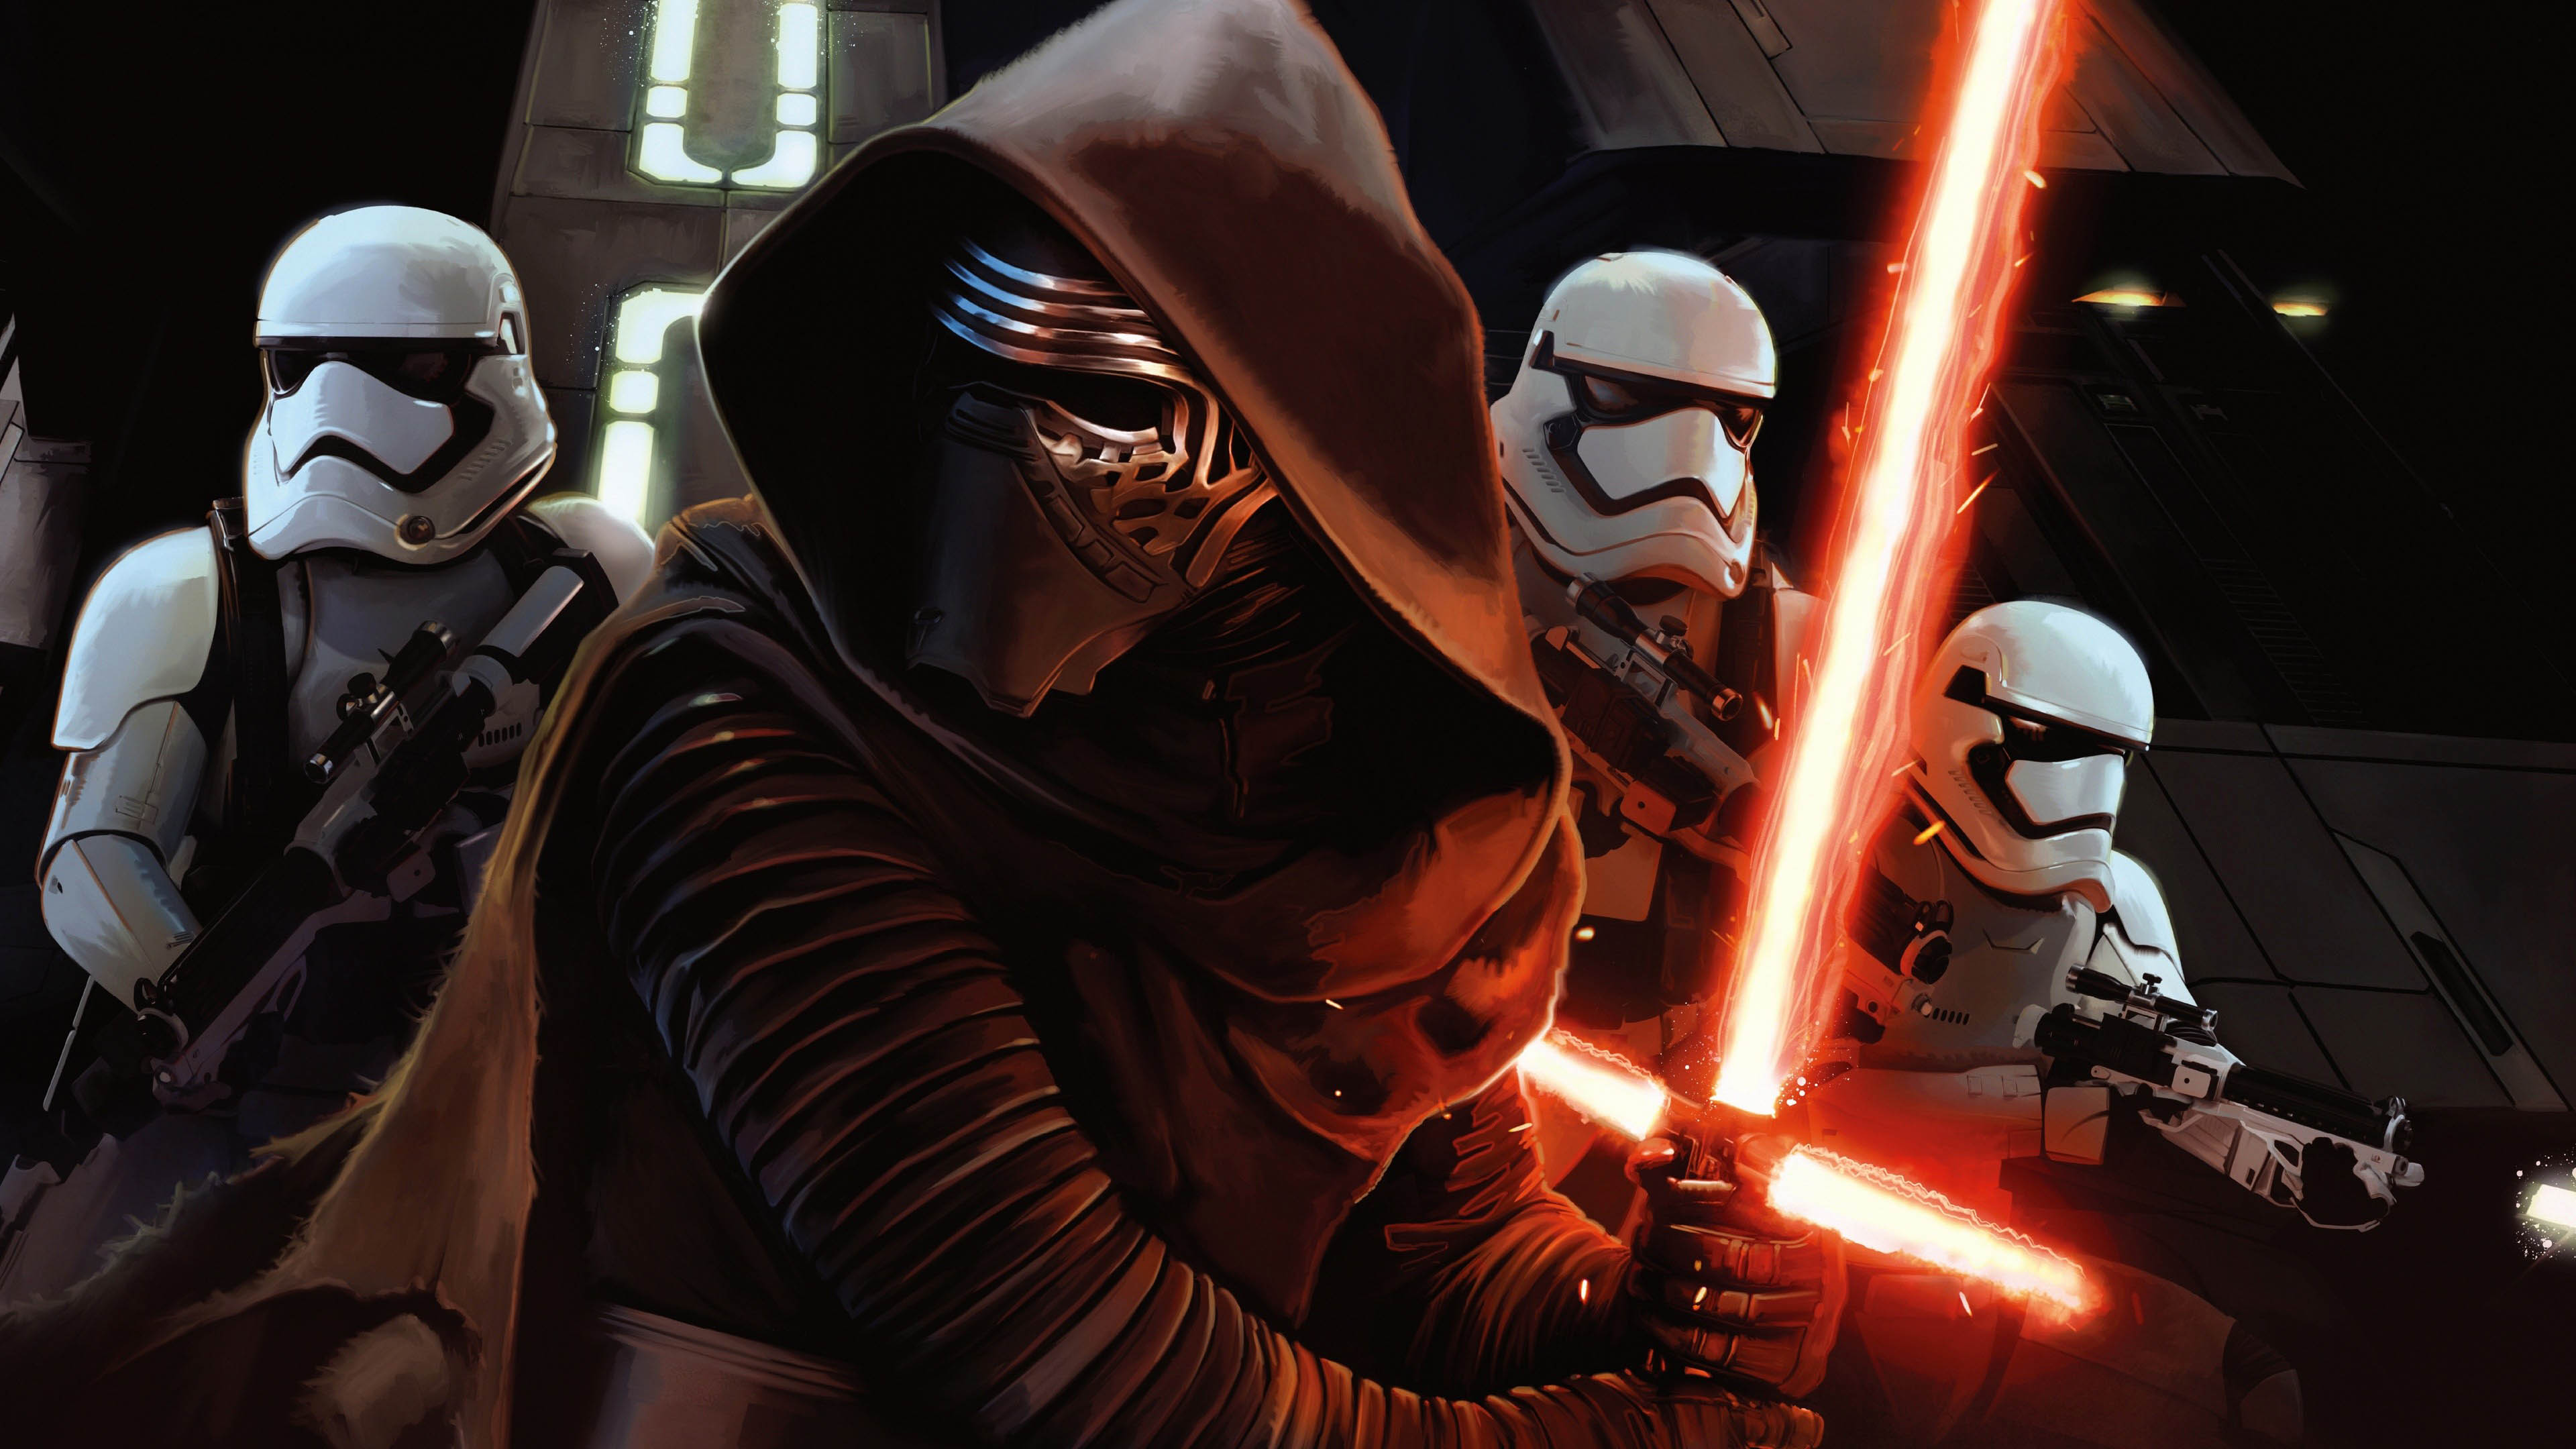 Kylo Ren Stormtroopers   Star Wars The Force Awakens   3840x2160